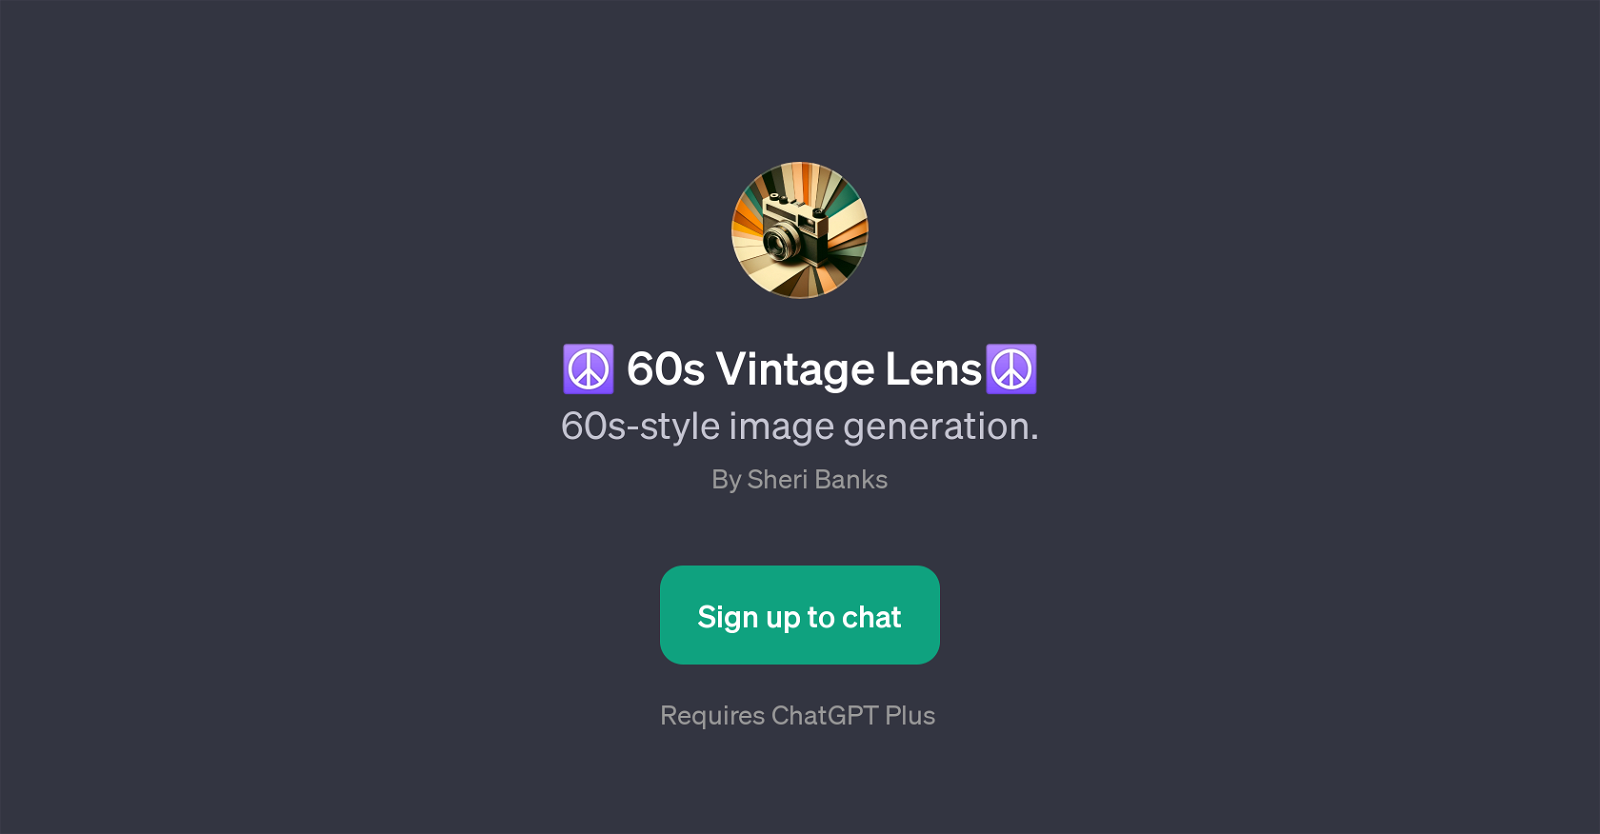 60s Vintage Lens website